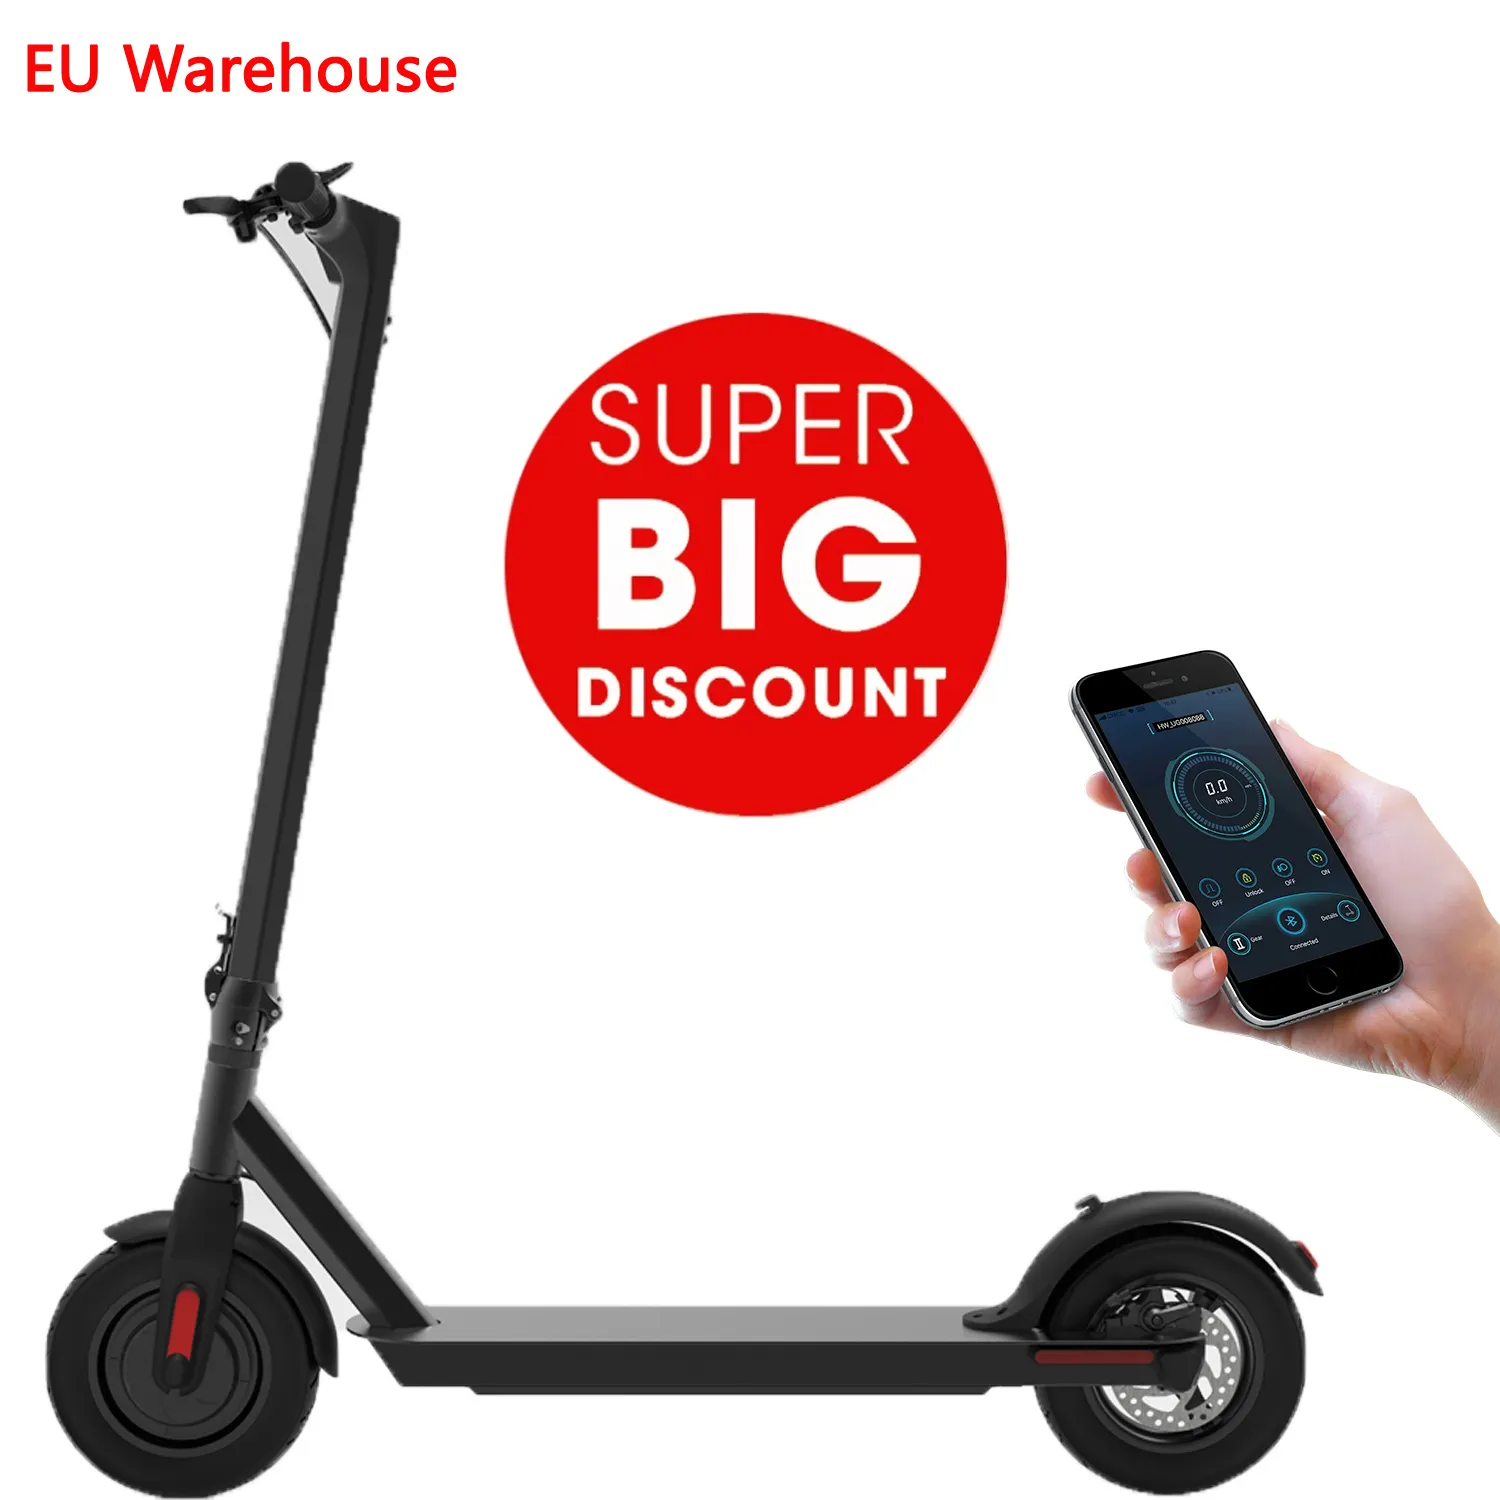 מהיר משלוח מפני האירופי מחסן m365pro למבוגרים מתקפל קורקינט חשמלי 350W עם אפליקציה Escooter דואר קטנועים